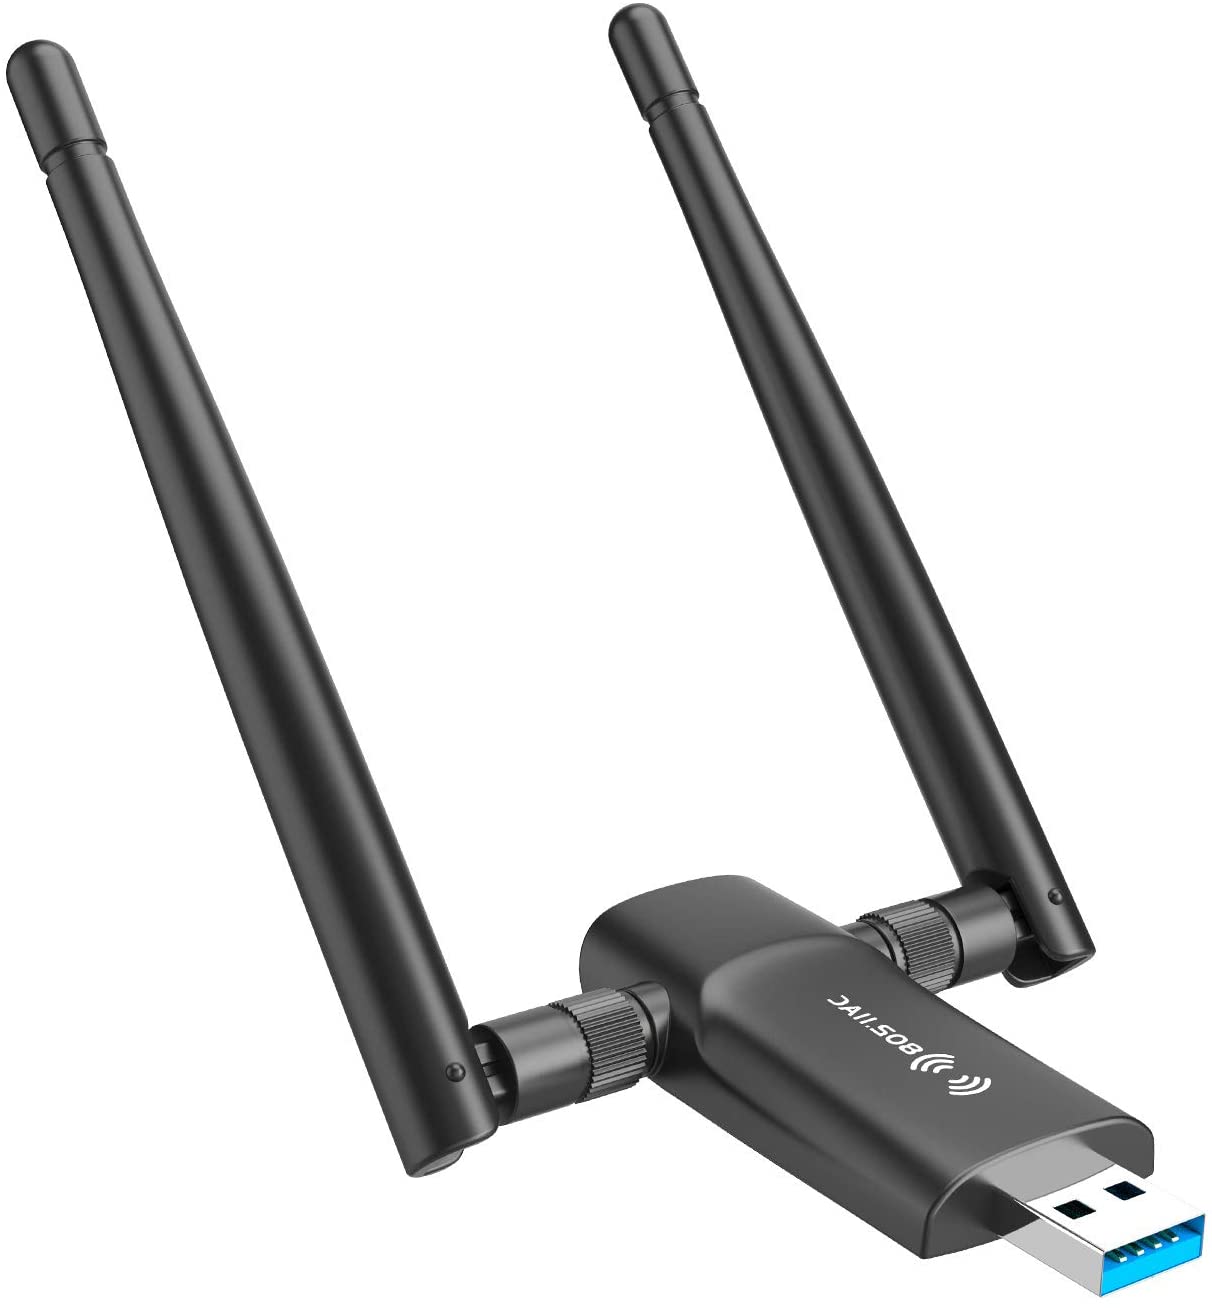 Nineplus Wireless USB WiFi Adapter Antenna